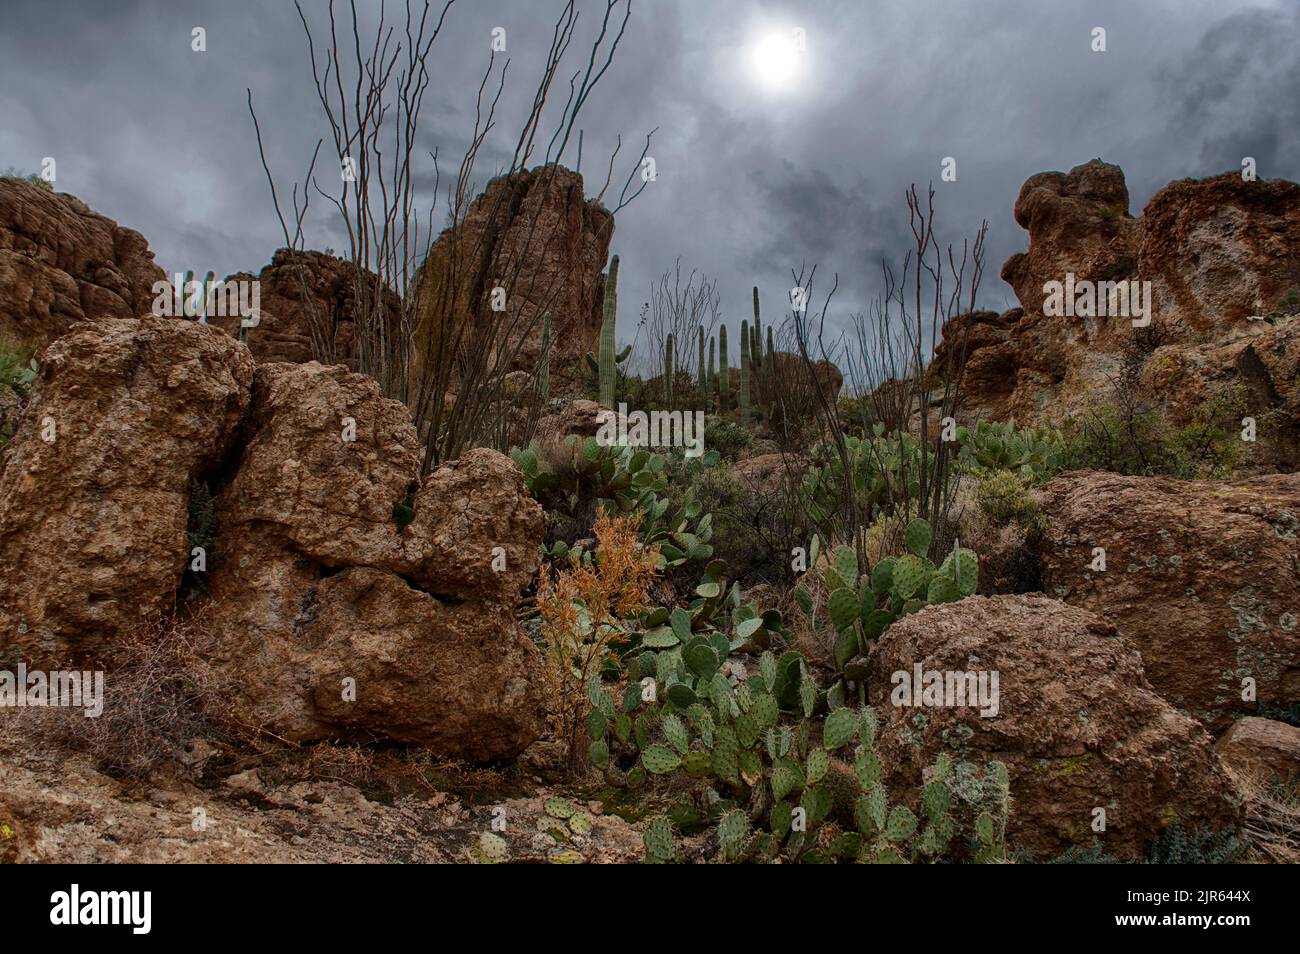 Bellissimo paesaggio desertico con vegetaition cactus nelle superstizioni, Arizona Foto Stock